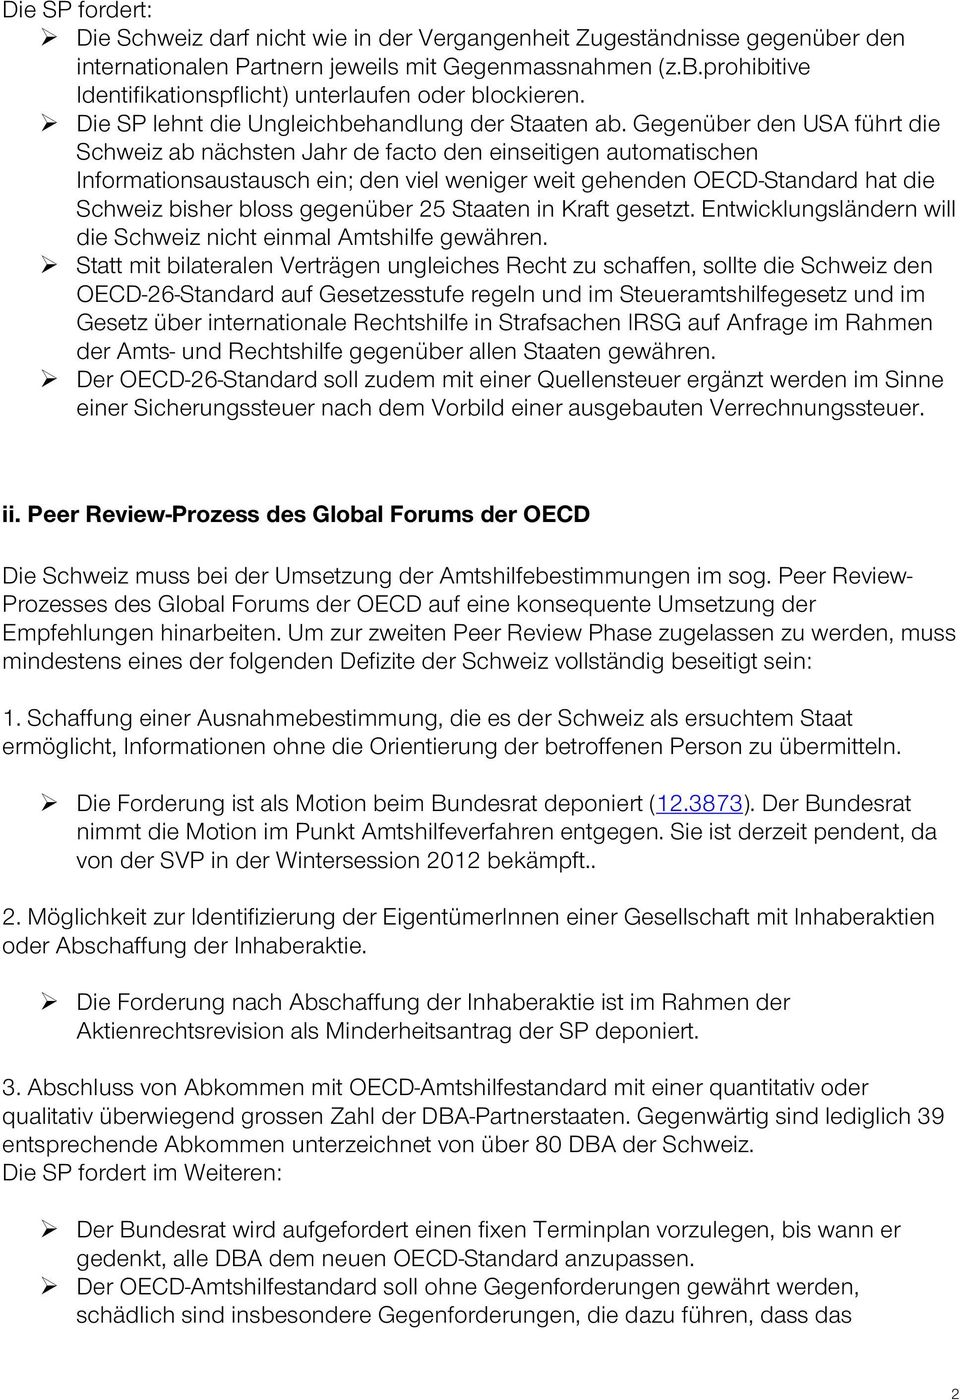 Gegenüber den USA führt die Schweiz ab nächsten Jahr de facto den einseitigen automatischen Informationsaustausch ein; den viel weniger weit gehenden OECD-Standard hat die Schweiz bisher bloss